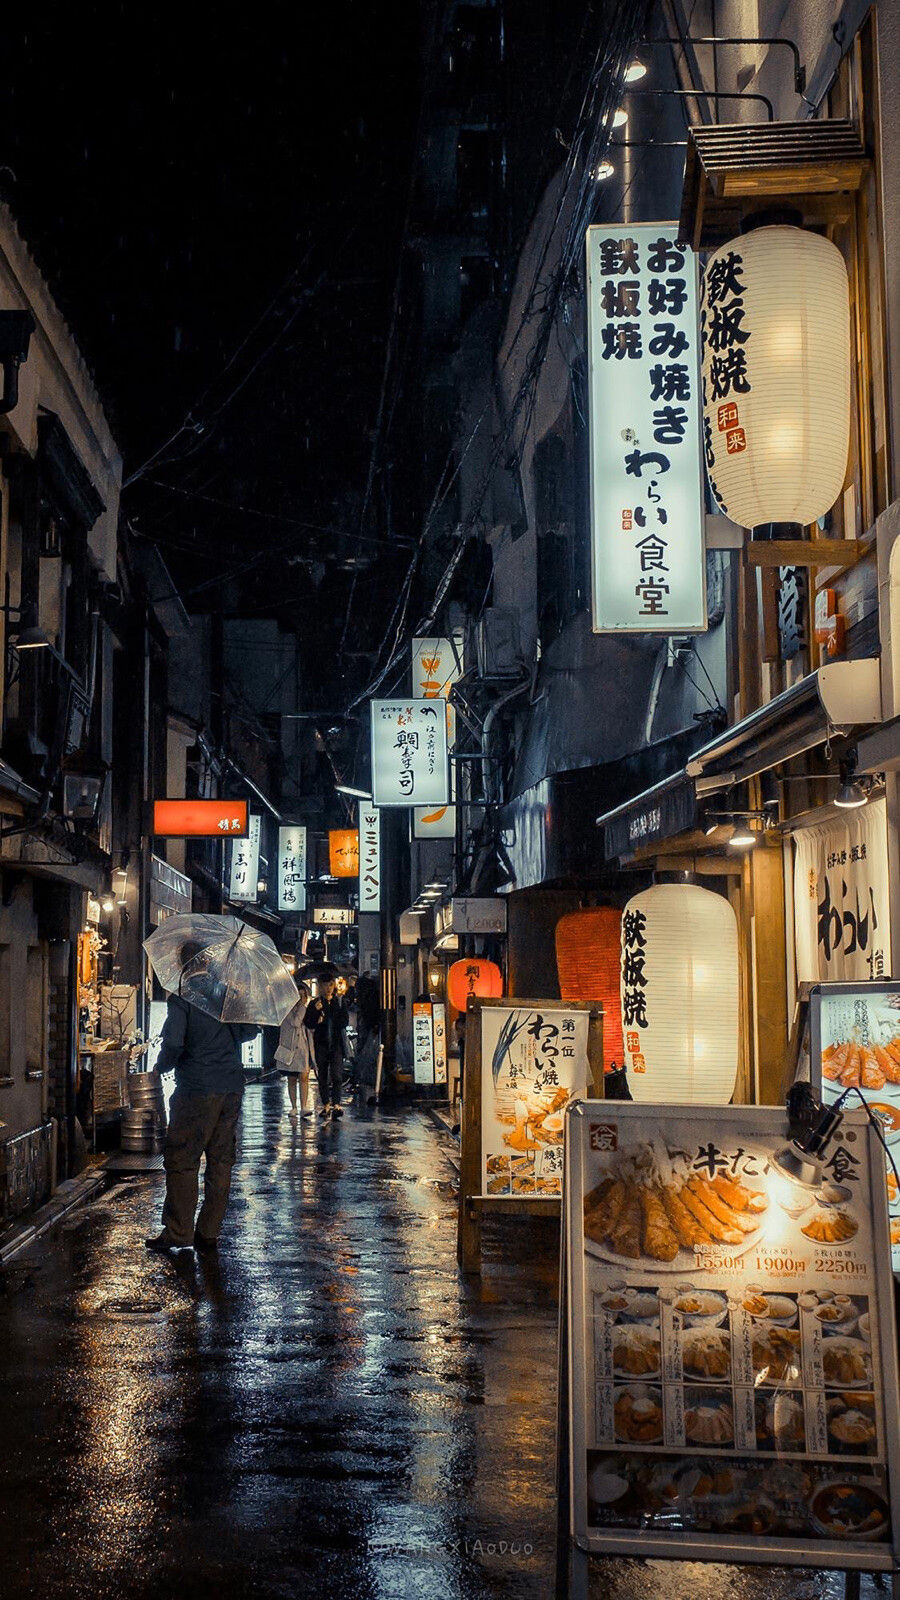 日本的街道夜景风景壁纸 湖光山色 夜景摄 堆糖 美图壁纸兴趣社区